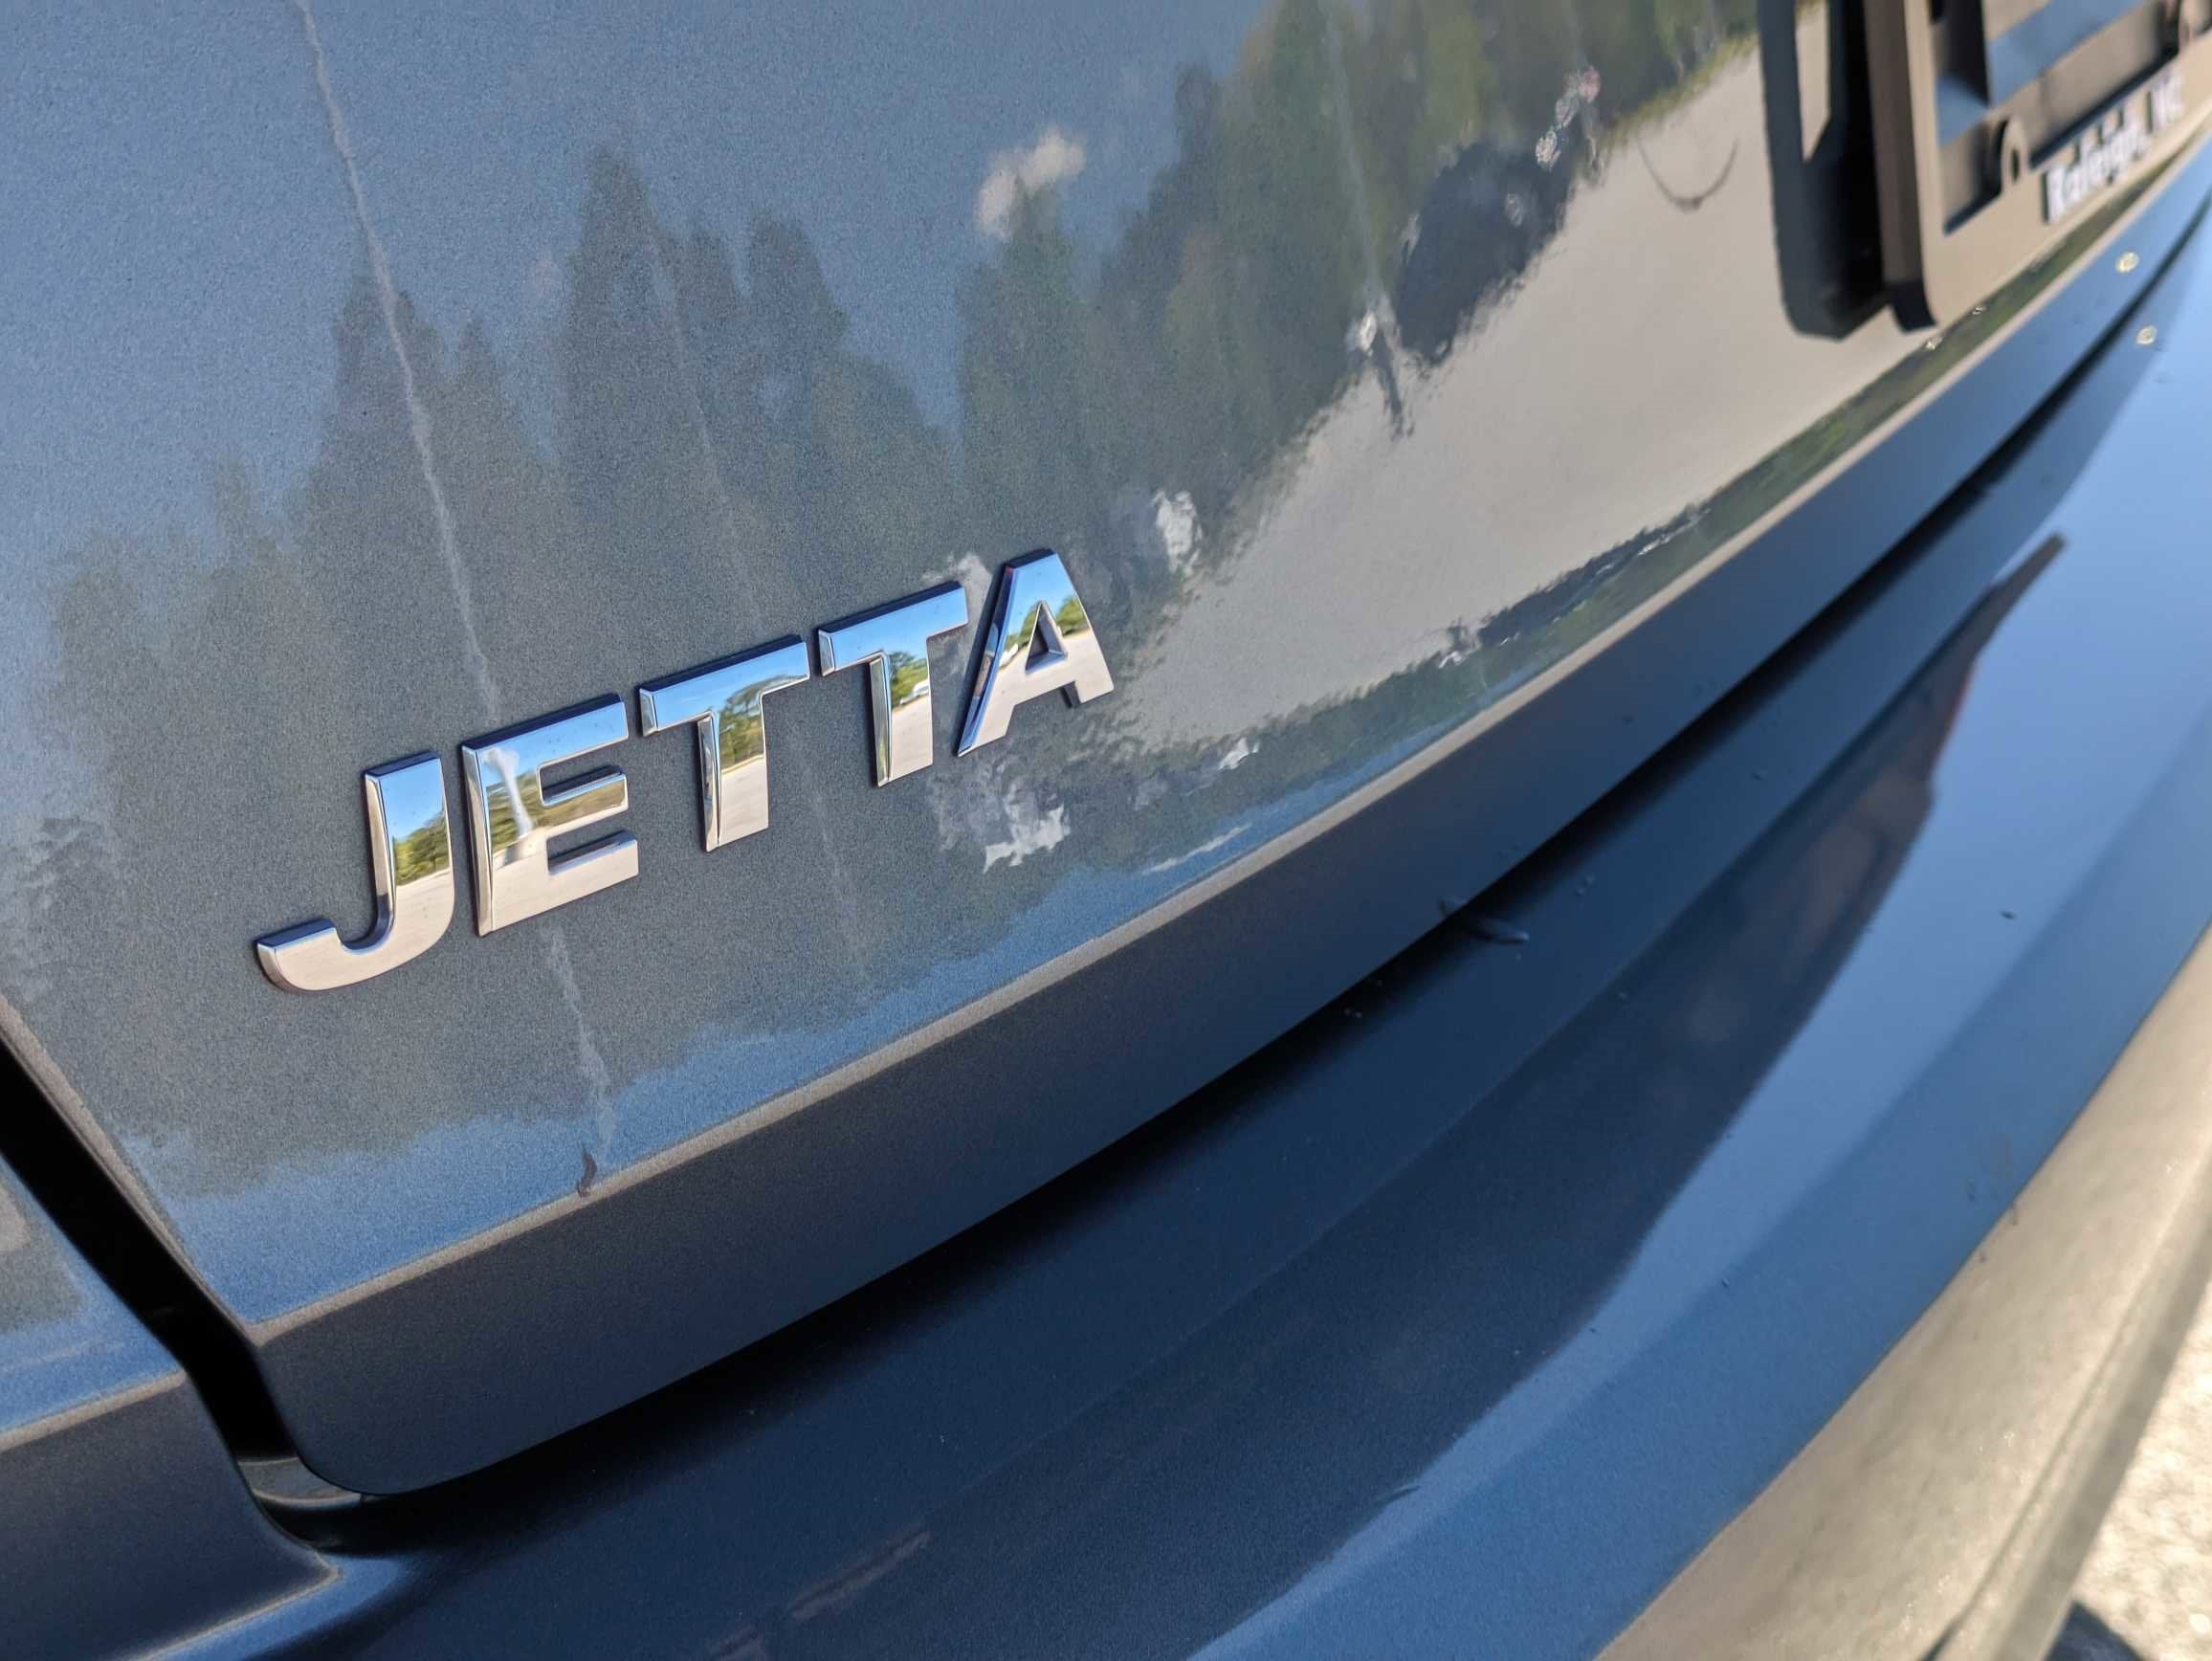 2021 Volkswagen Jetta SEL